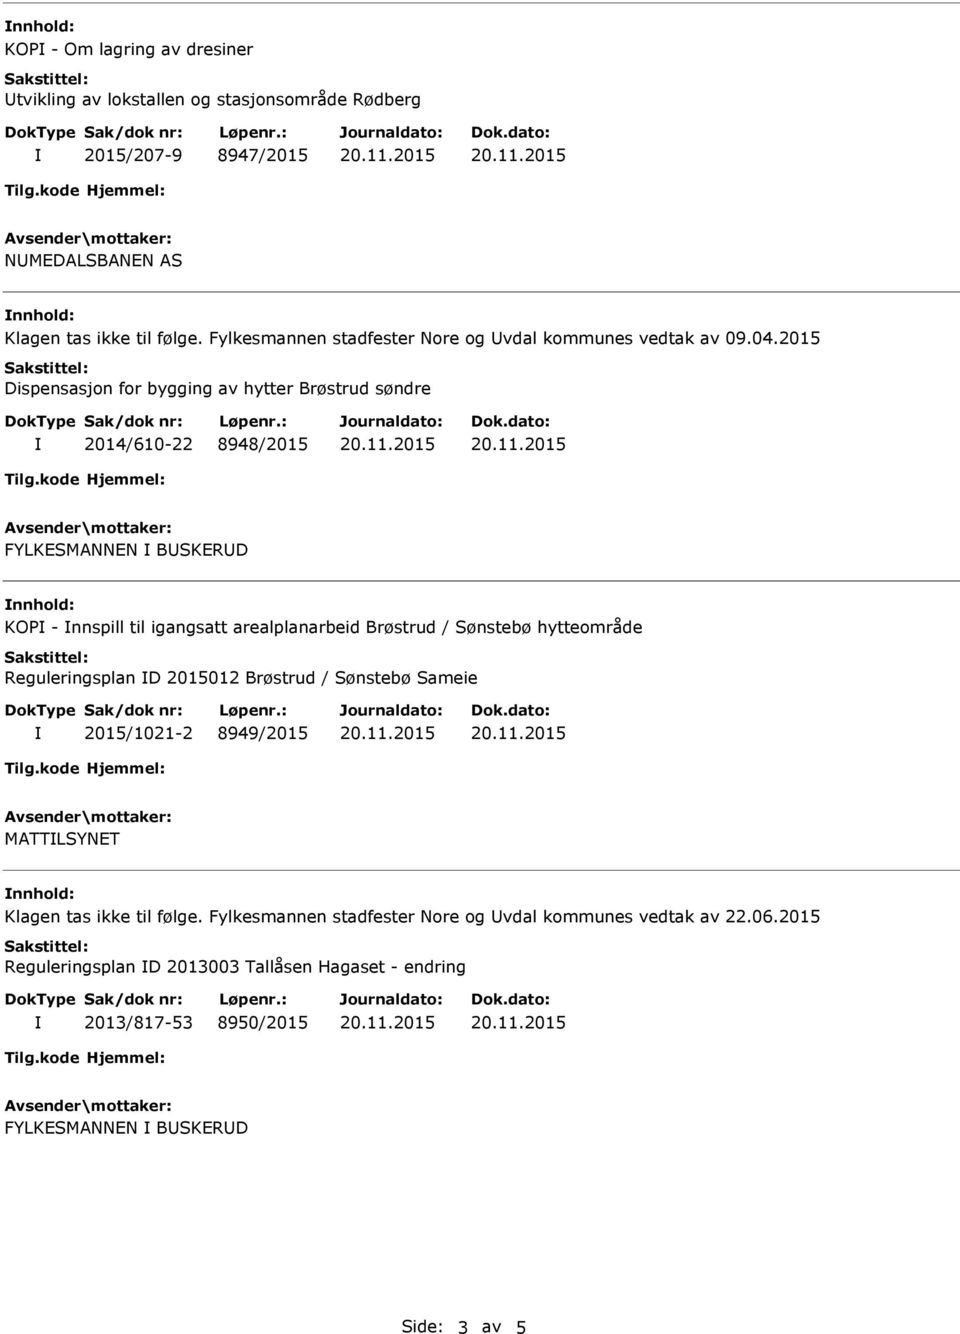 2015 Dispensasjon for bygging av hytter Brøstrud søndre 2014/610-22 8948/2015 FYLKESMANNEN BUSKERUD nnhold: KOP - nnspill til igangsatt arealplanarbeid Brøstrud / Sønstebø